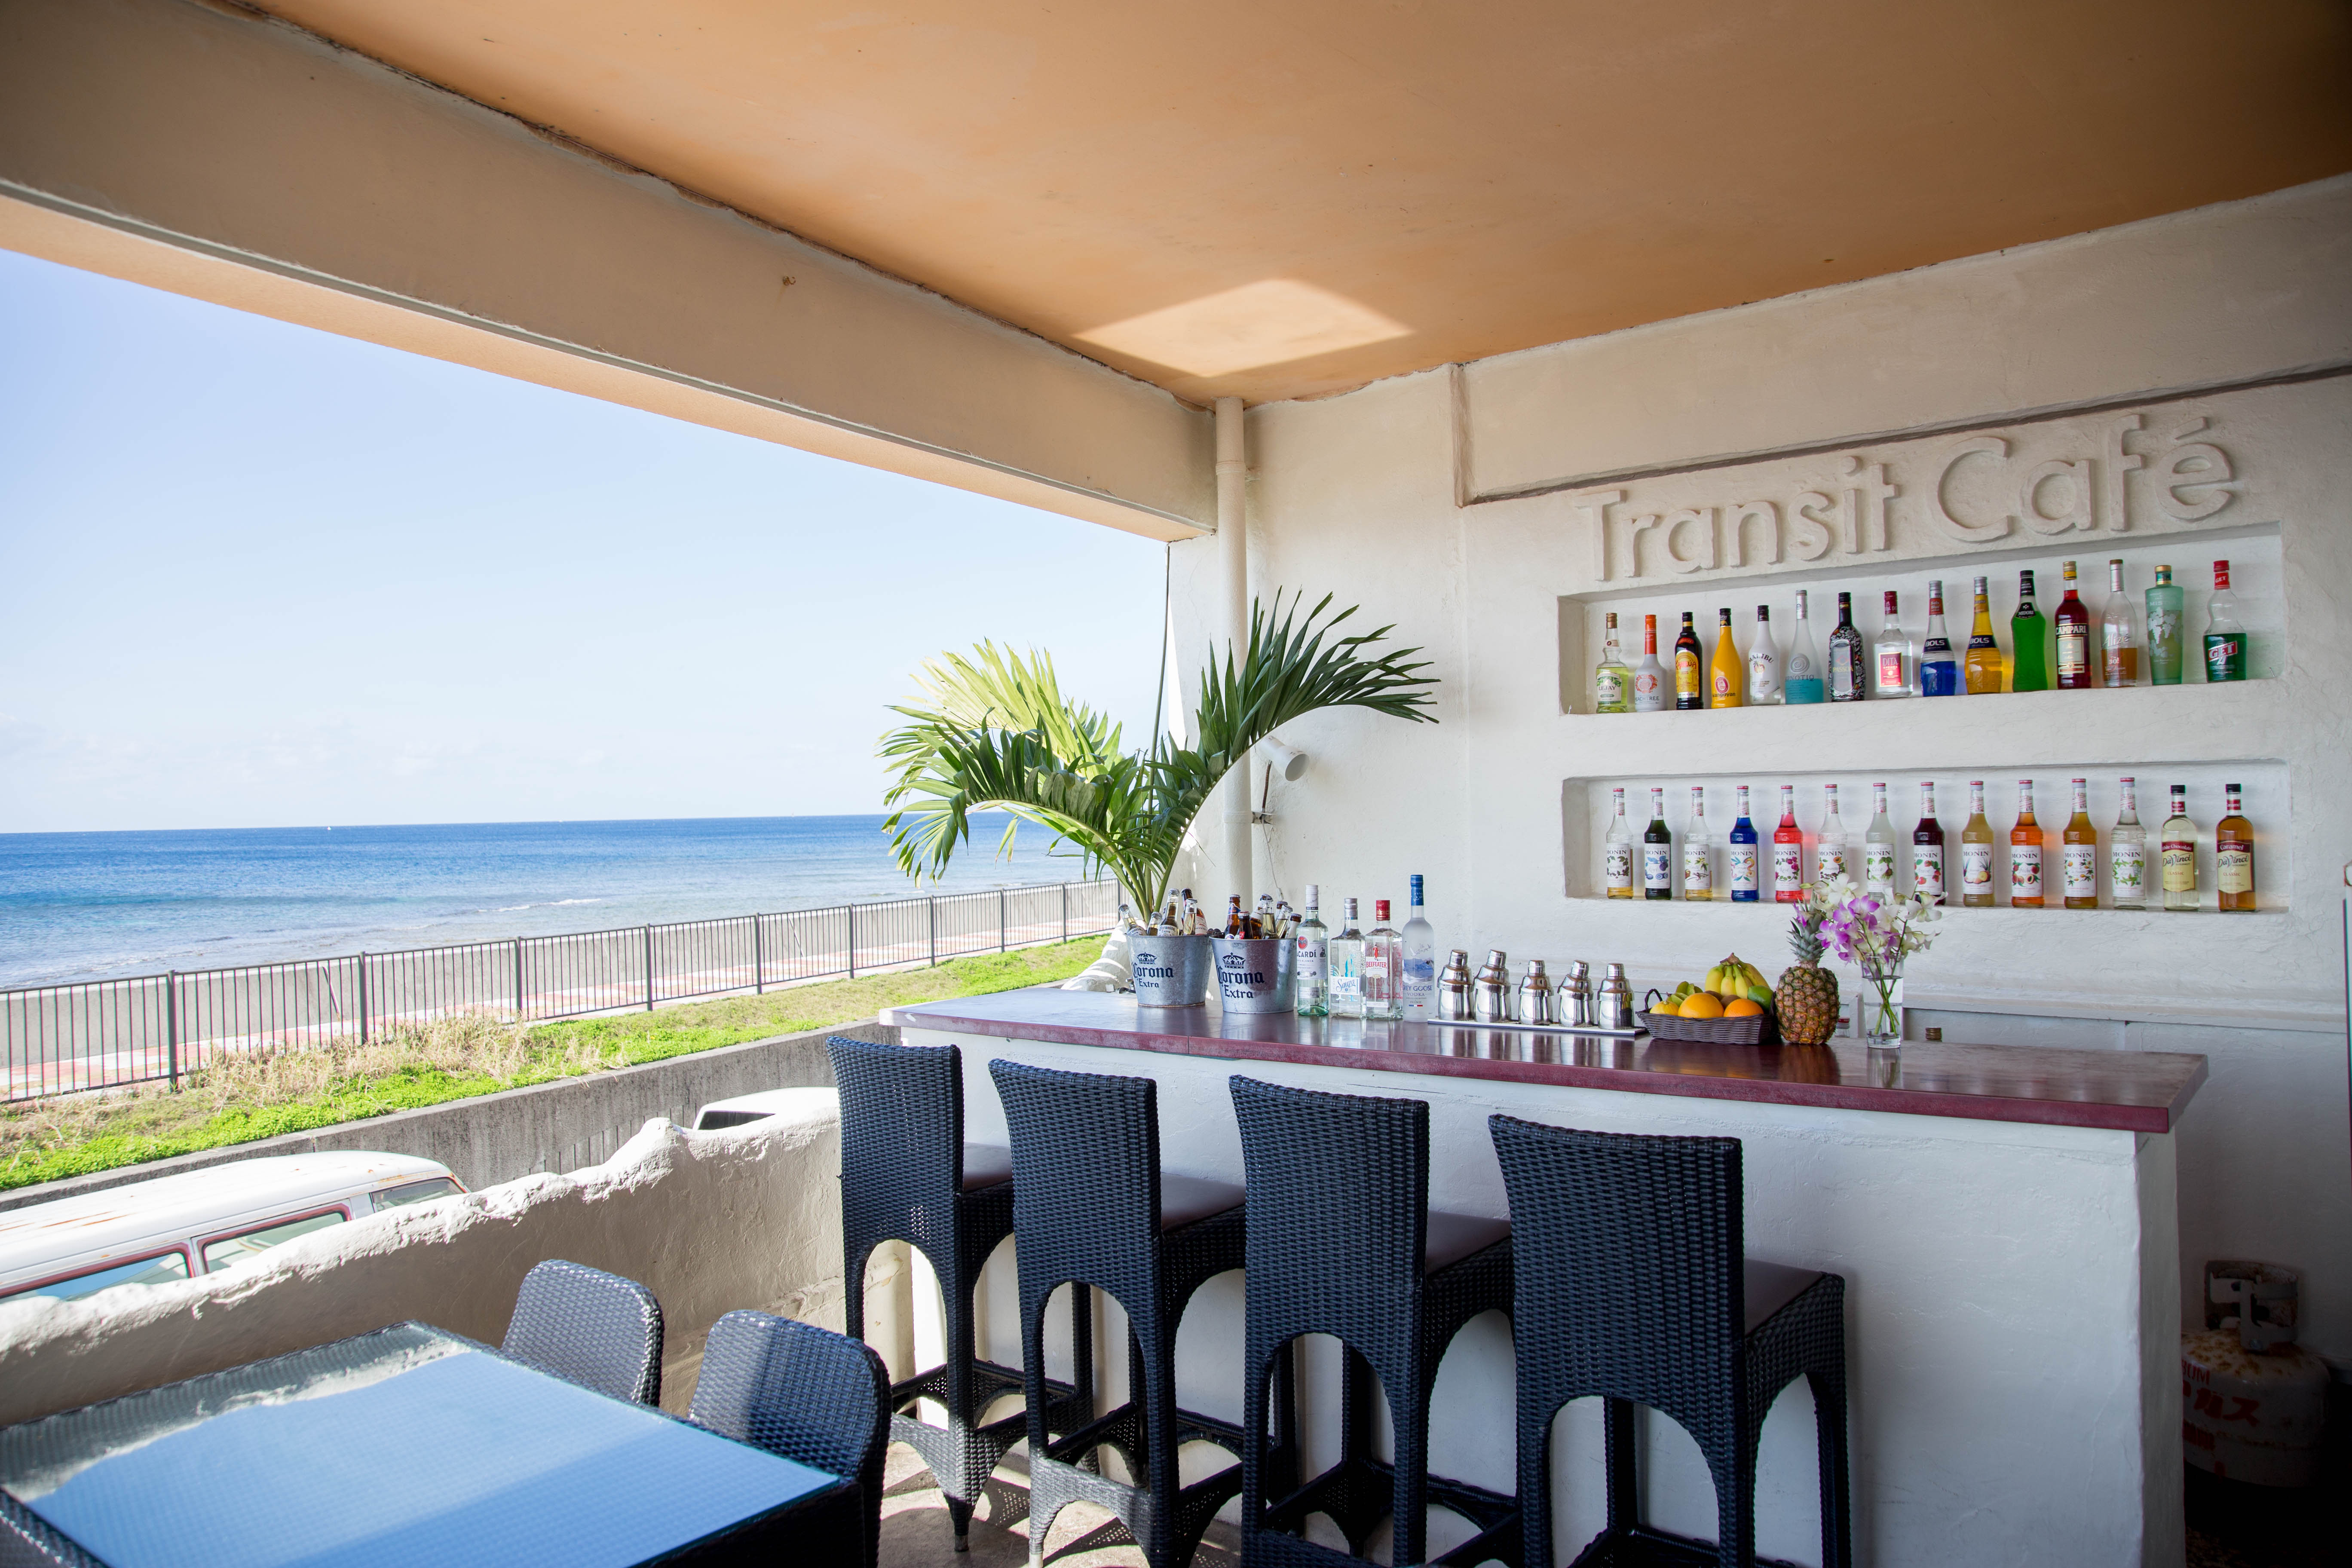 海が一望できるカフェ Transit Cafe トランジットカフェ マリーマーブルのリゾートウェディング